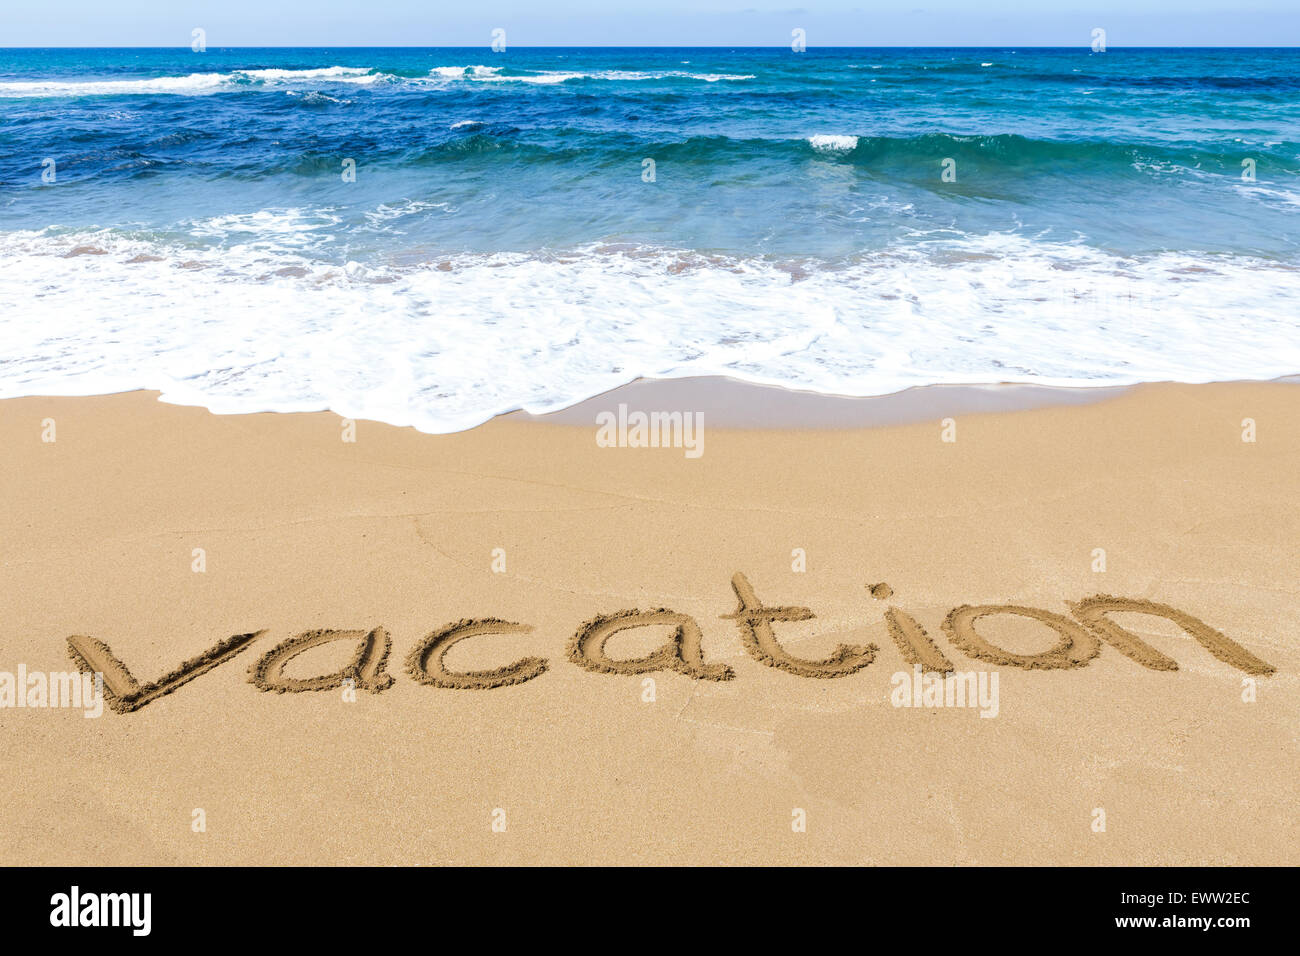 Wort Urlaub geschrieben in Sandstrand an der Küste mit blauem Meer und Wellen Stockfoto